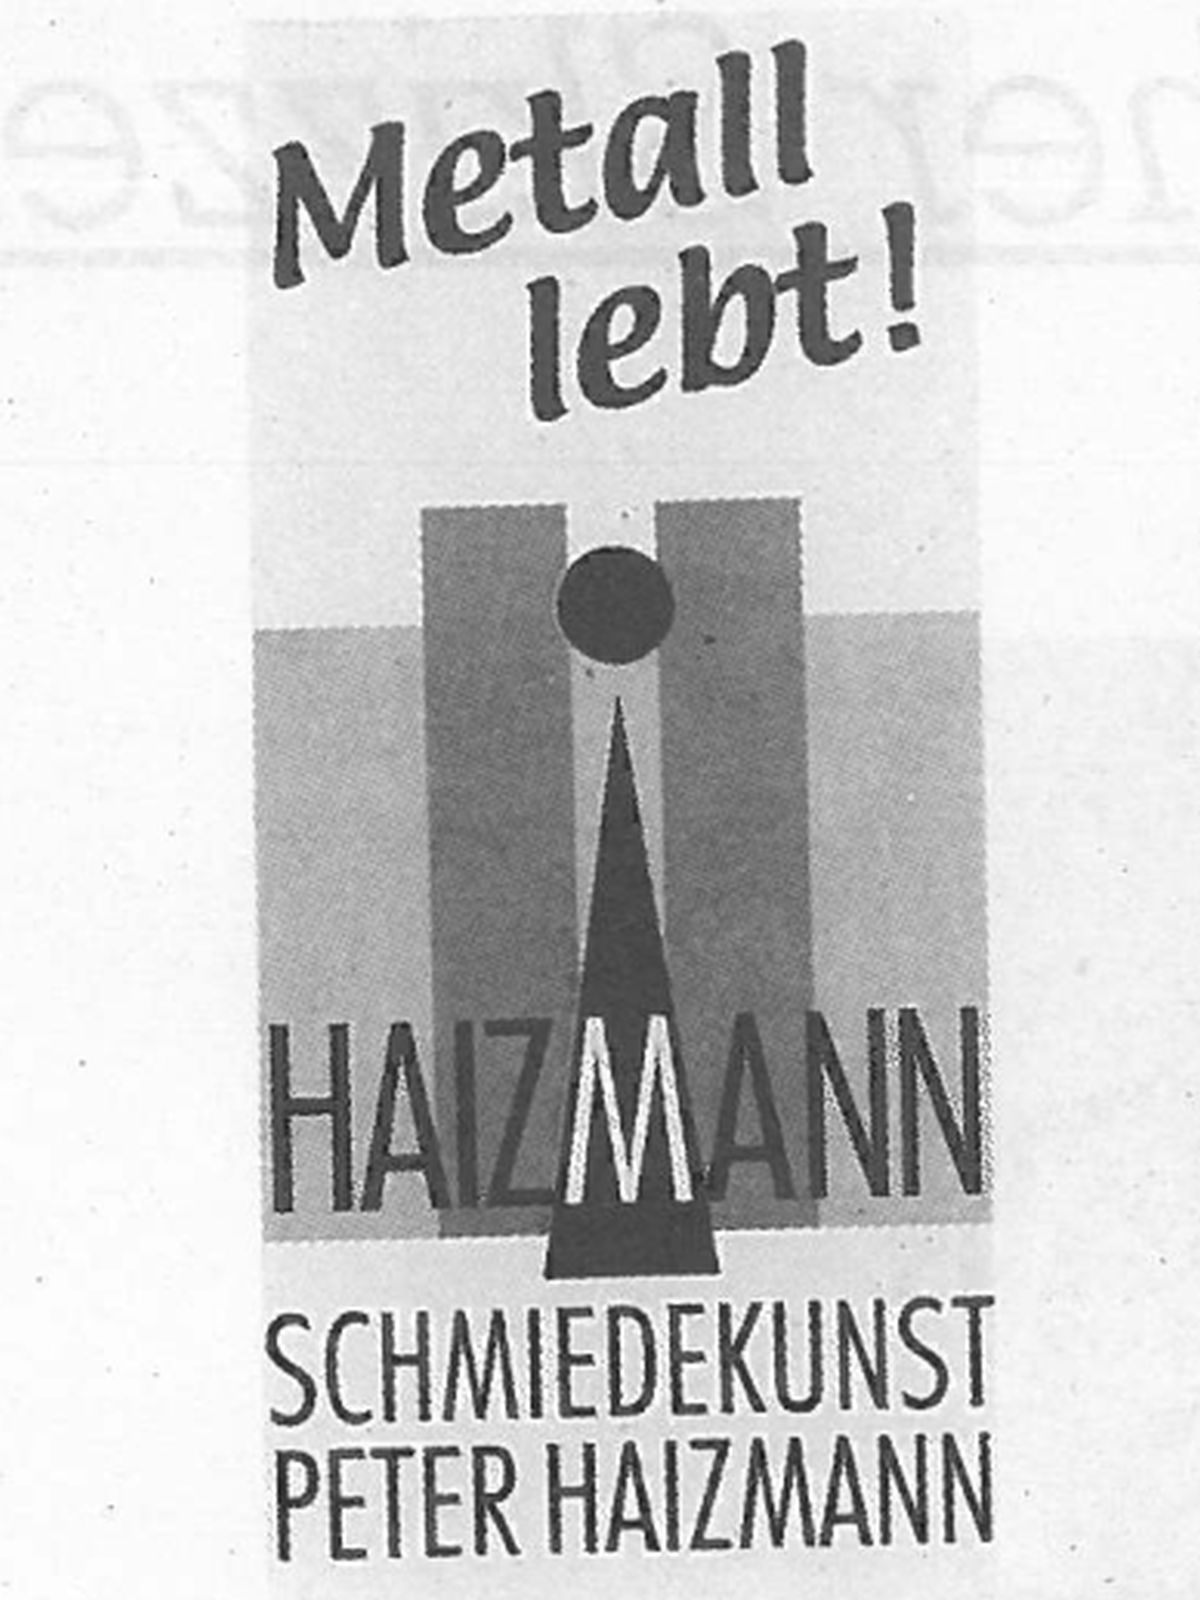  Schopflocher Skizzen Logo von Herrn Haizmann - Bild wird mit einem Klick vergrößert 